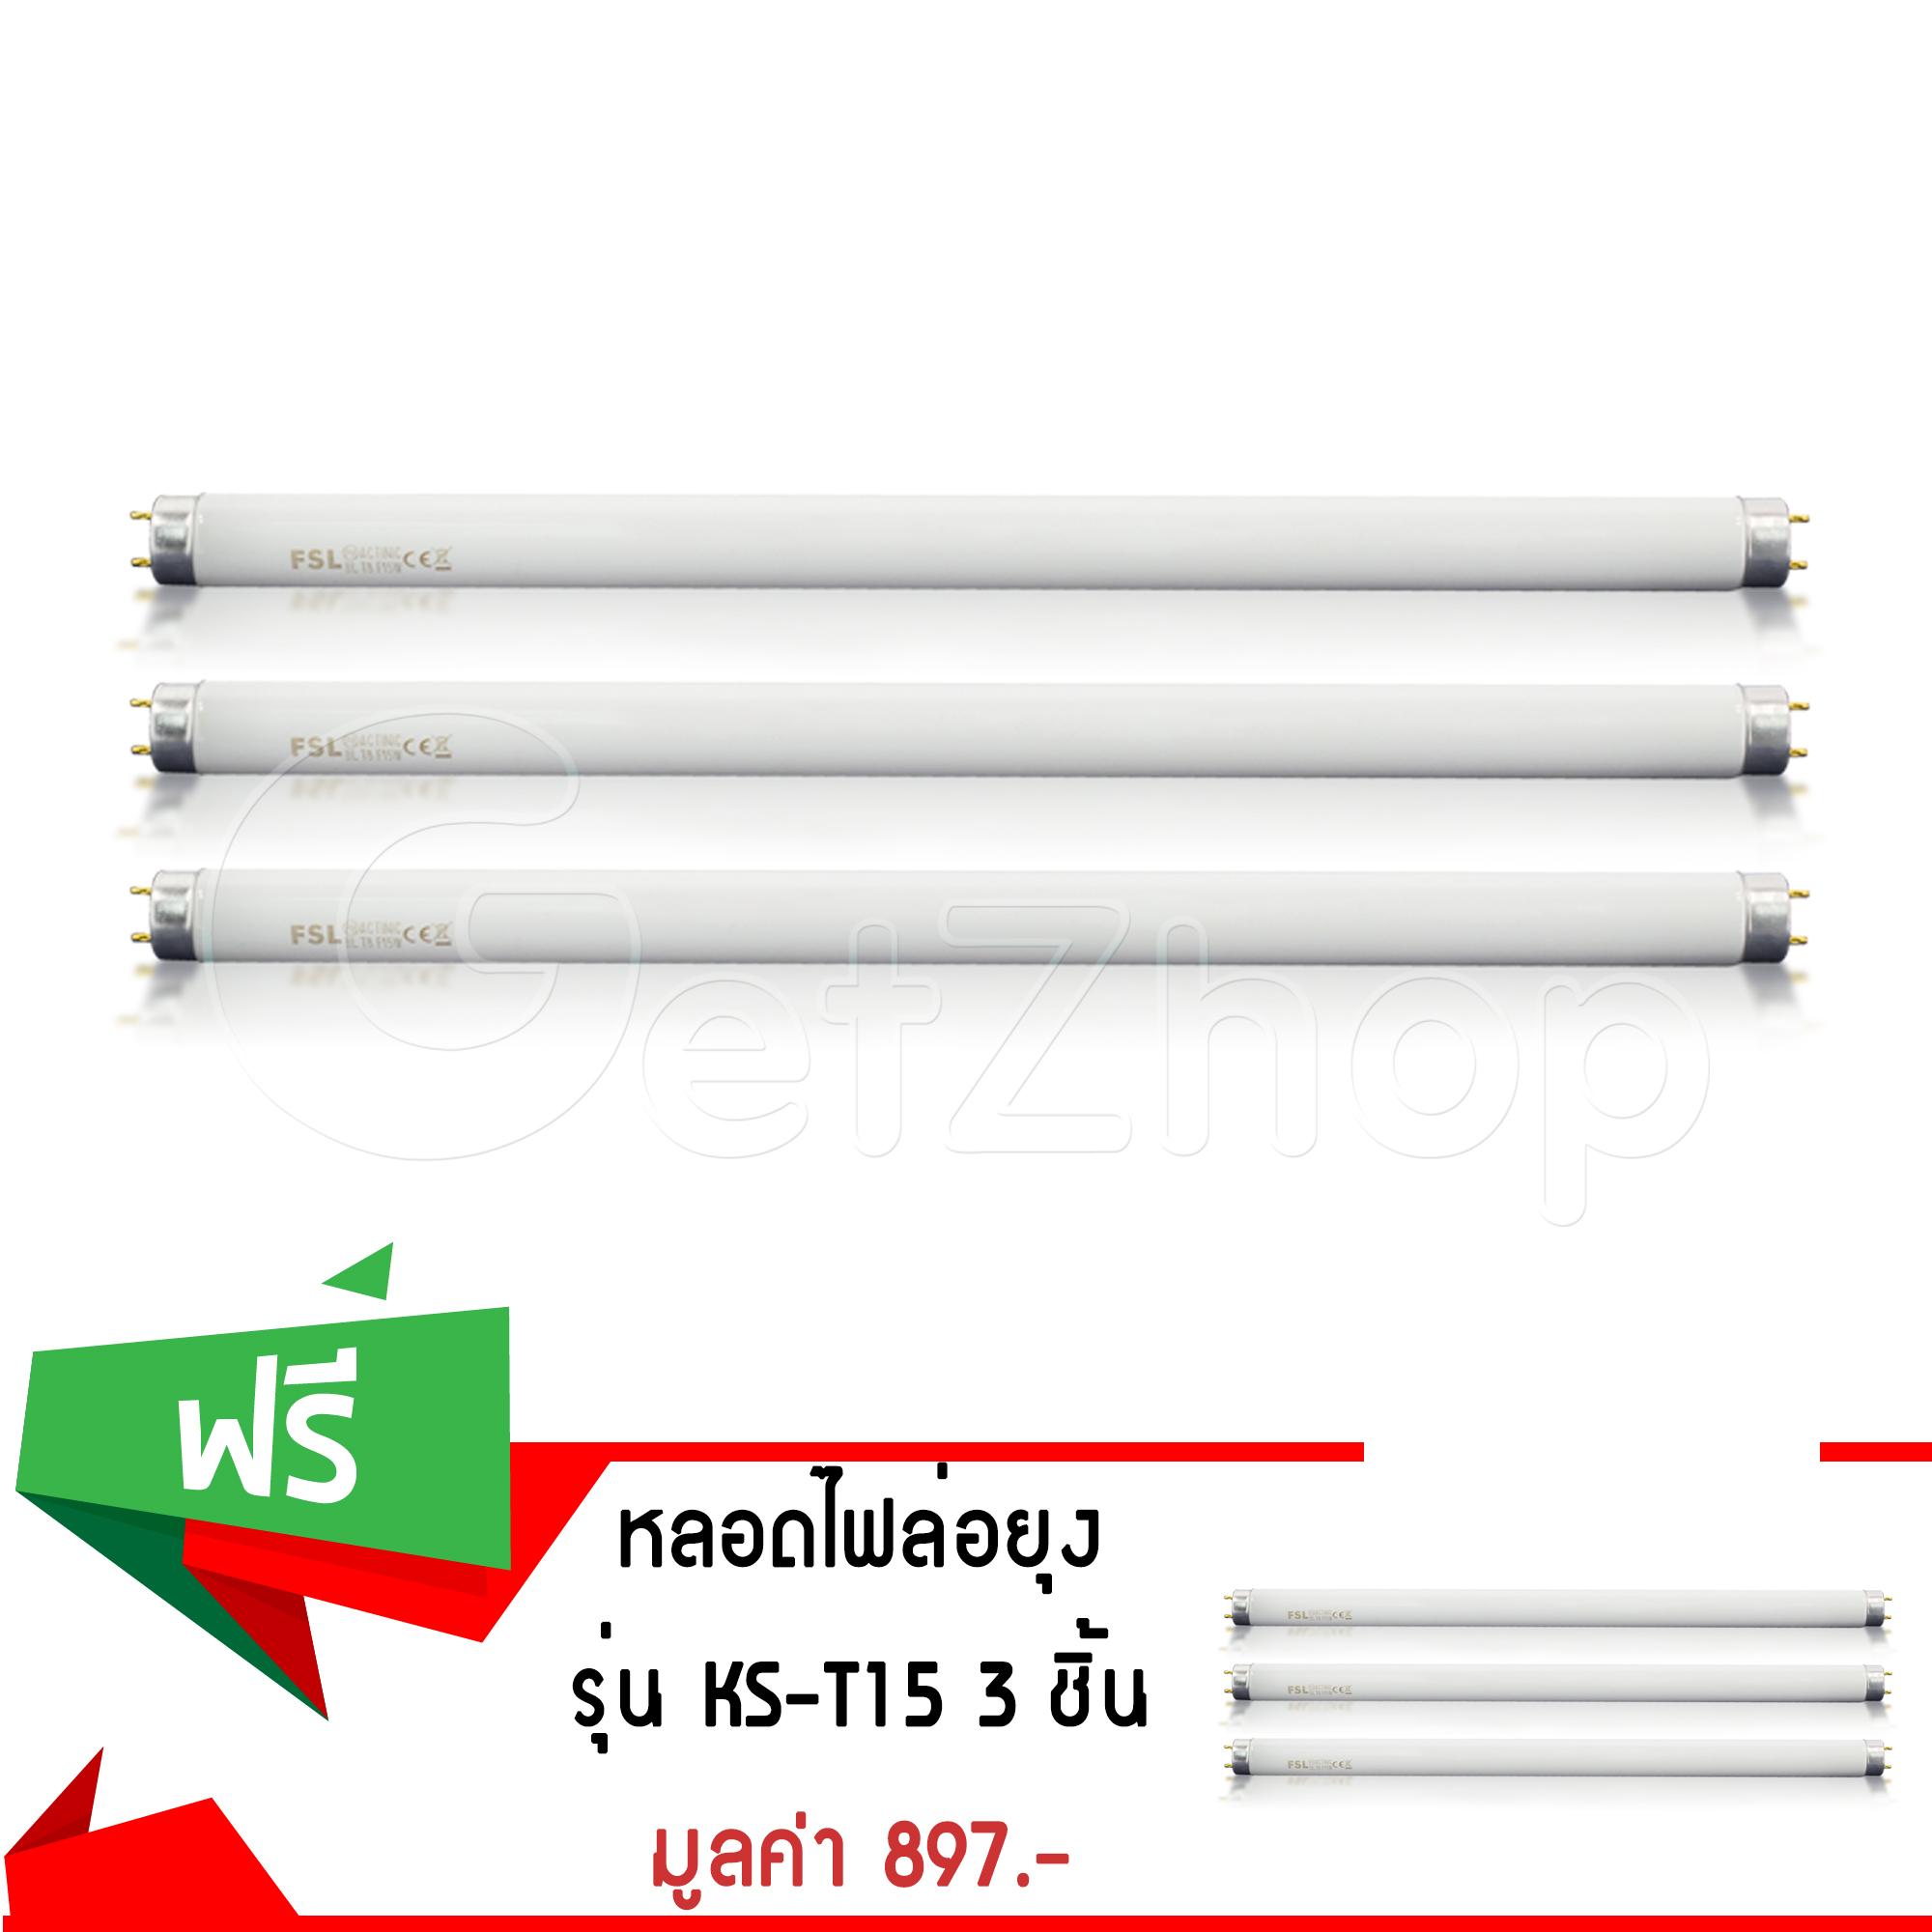 Letshop หลอดไฟล่อยุง หลอดไฟ ฟลูออเรสเซนซ์ รุ่น KS-T15 (สีขาว) (ซื้อ 3 แถม 3)